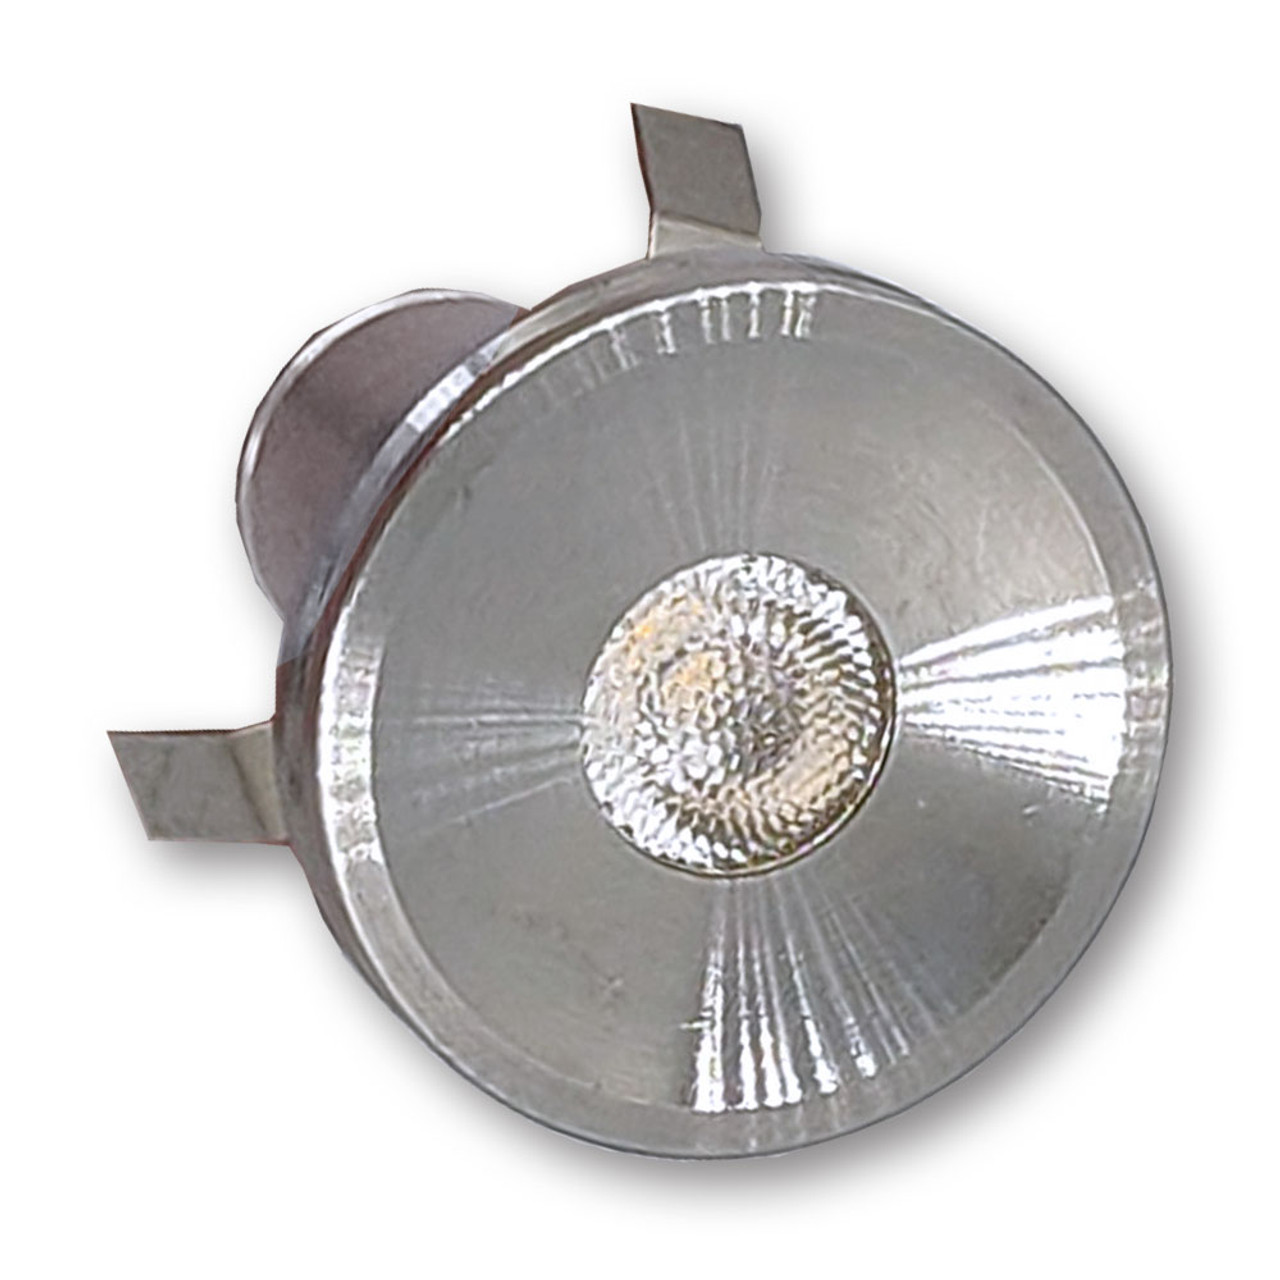 Mega LED - Mykonos LED Courtesy Light - 1 Watt, Warm White 3000K, Snap In Mounting, Aluminum Housing, 12-24V DC - Apollo Lighting